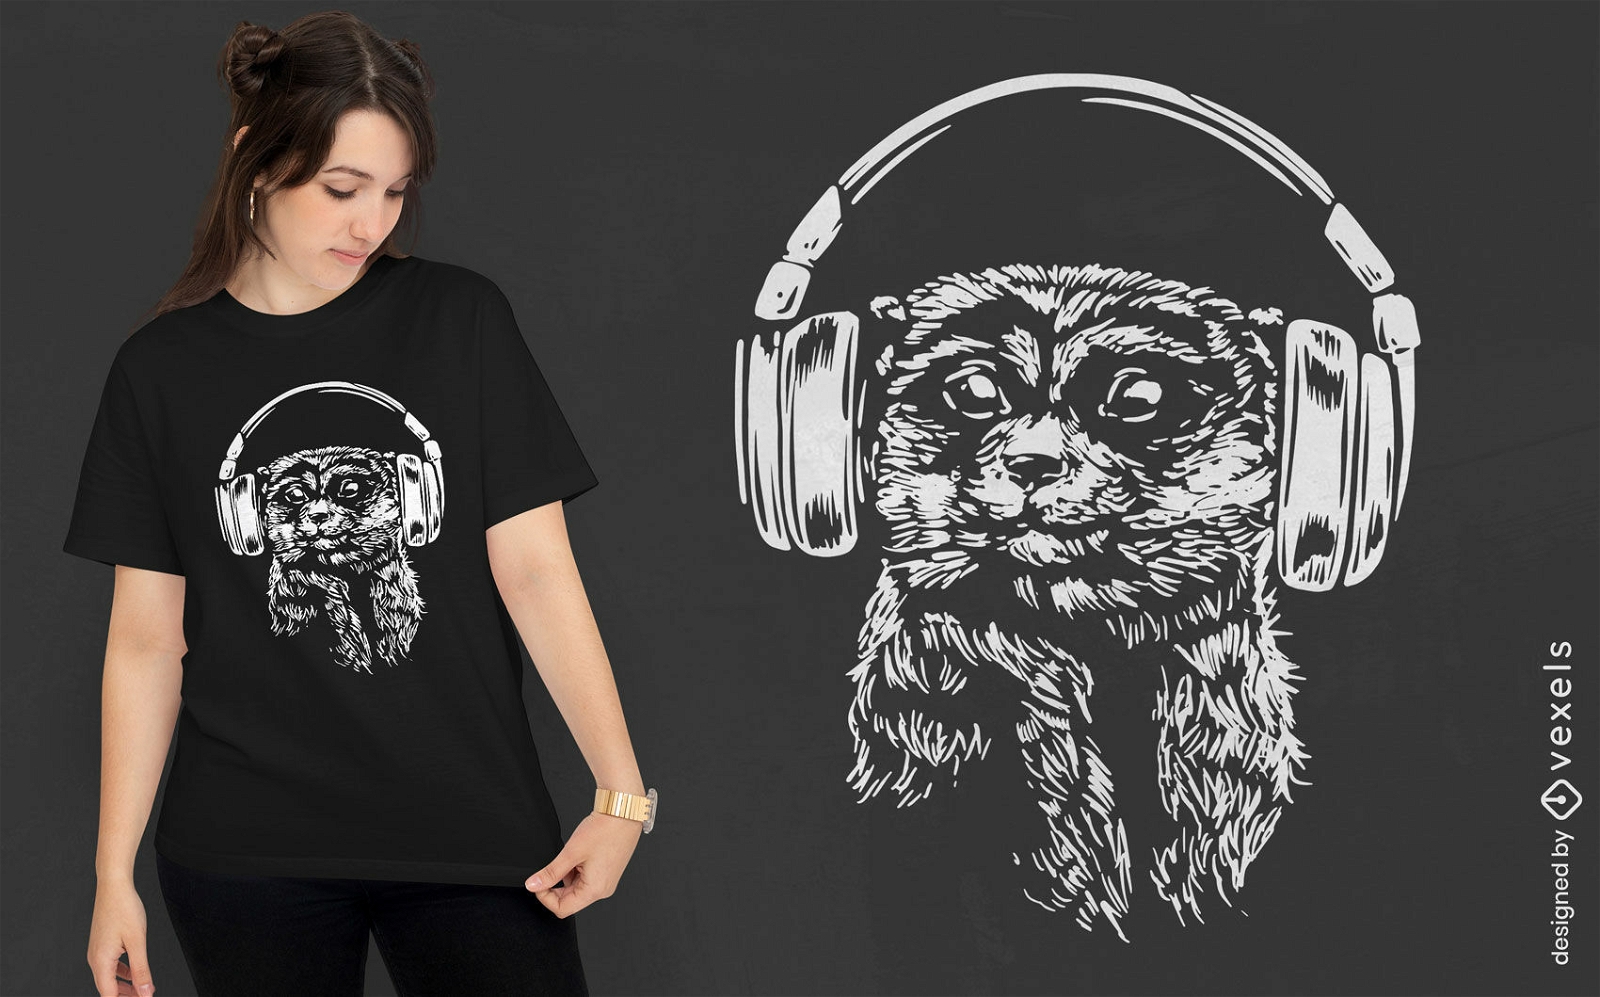 Musikalisches Erdm?nnchen-Tier-T-Shirt-Design